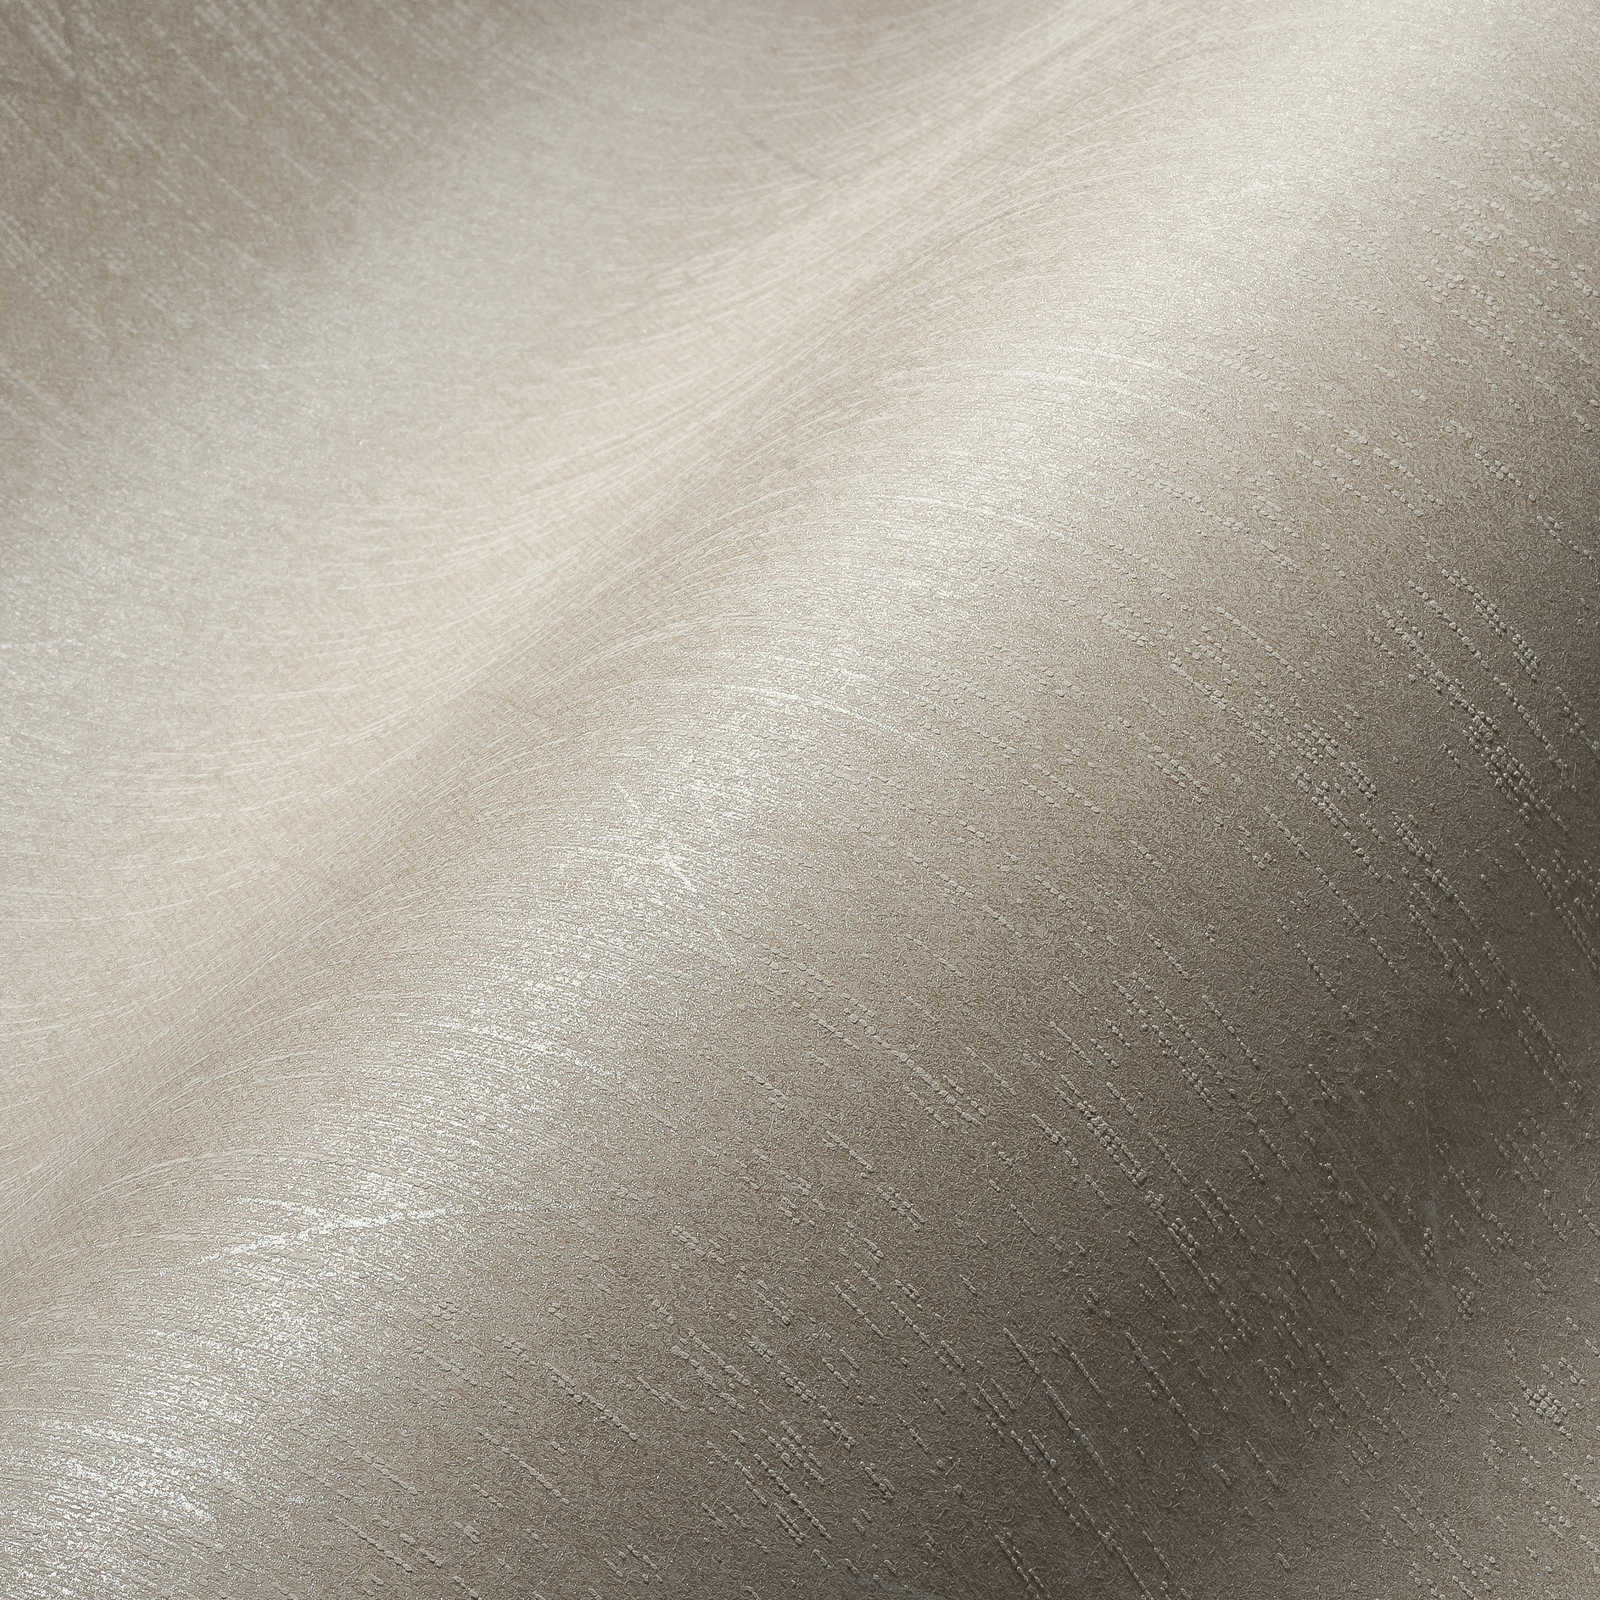             Carta da parati in tessuto ottico grigio chiaro con motivo lucido in stile retrò - Grigio
        